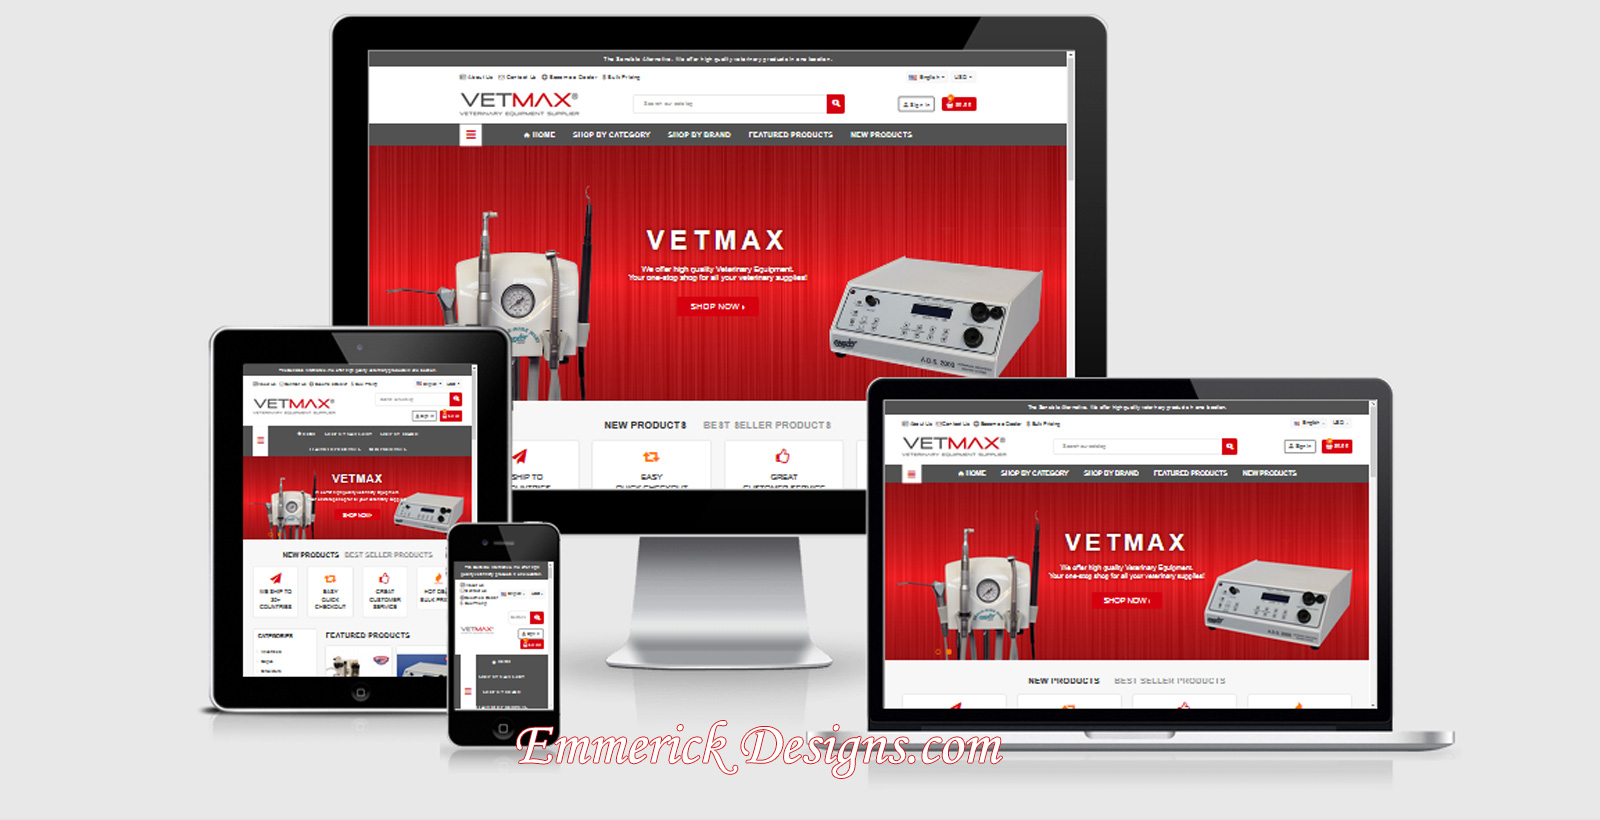 Web Design Cincinnati - VETMAX 10